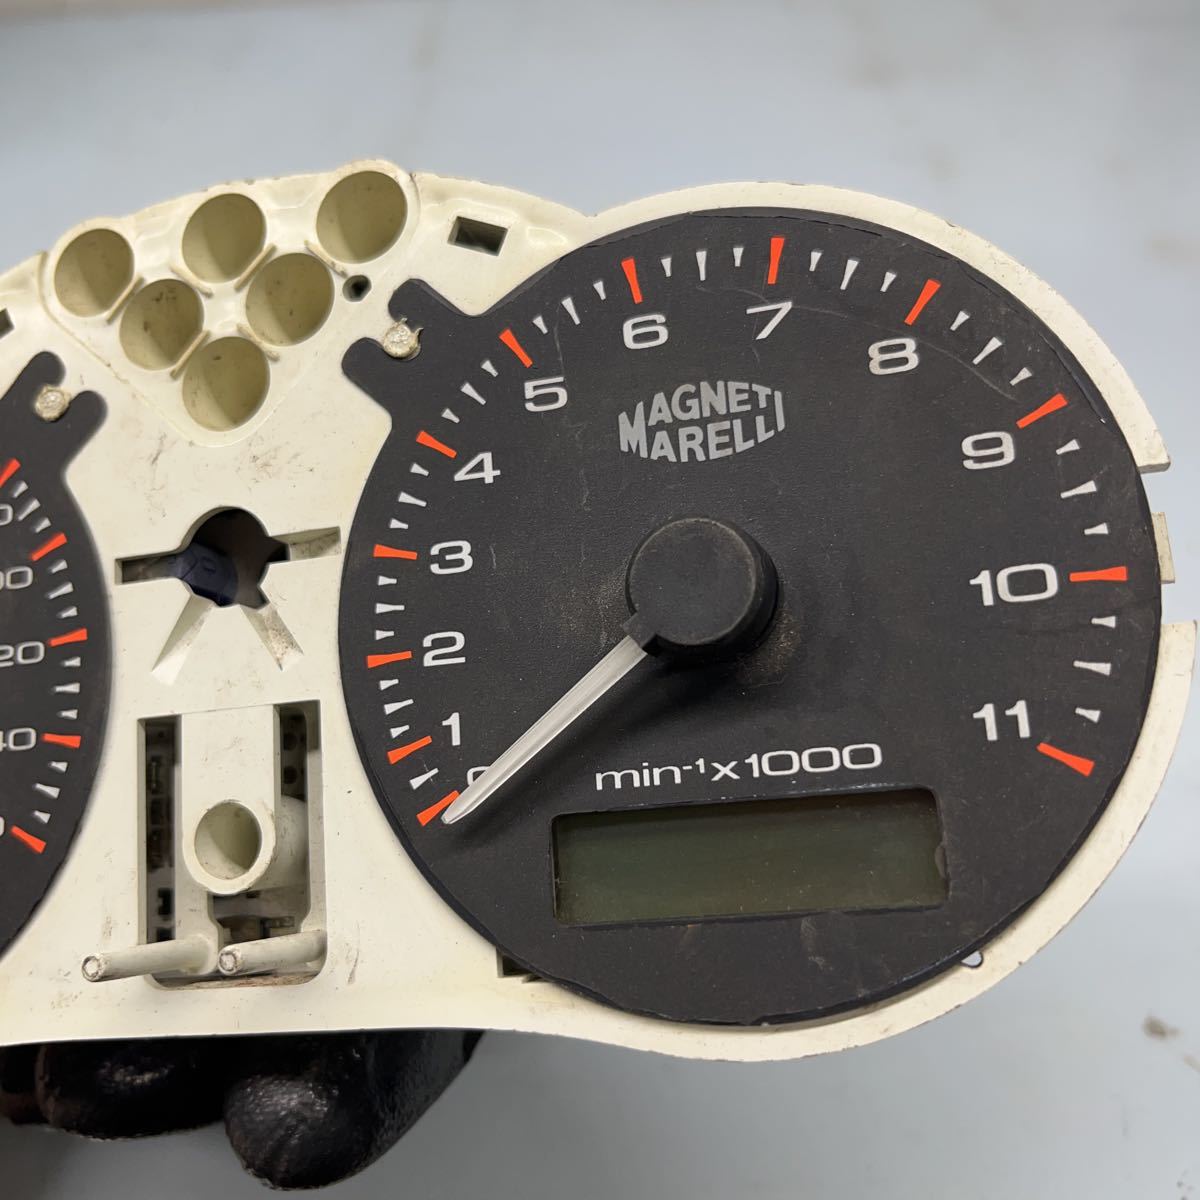 (.)DUCATI Ducati Monstar 1000S meter speed meter tachometer genuine products 